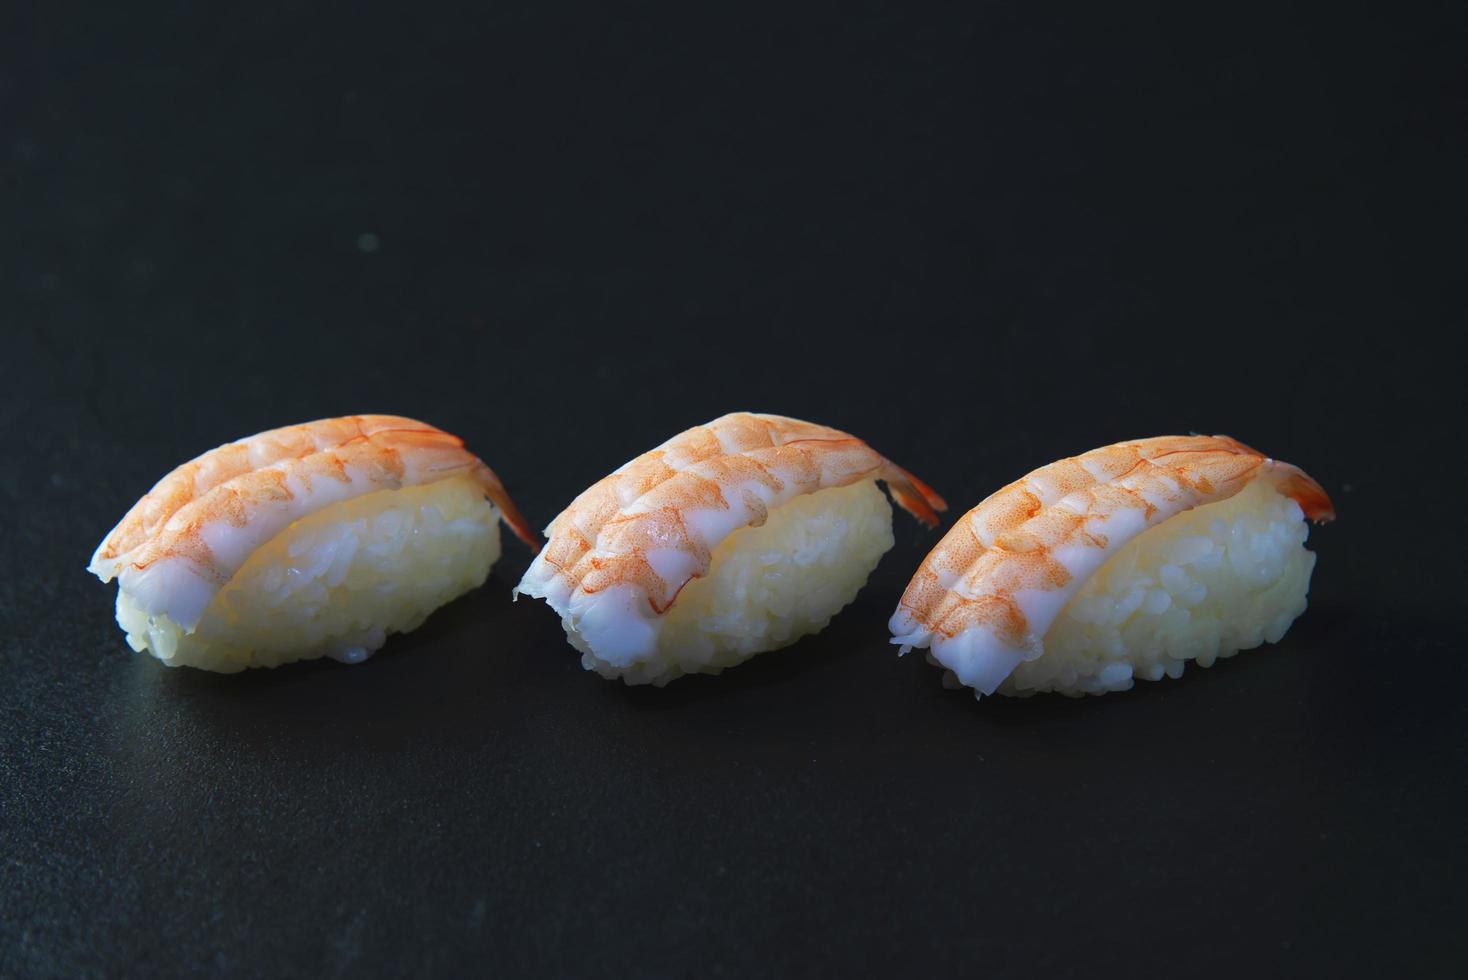 maki sushi rouleau japonais menu oriental au restaurant, gros plan photographie fraîcheur nourriture ensemble rouleau californien alimentation saine cuisine traditionnelle recettes d'apéritif photo